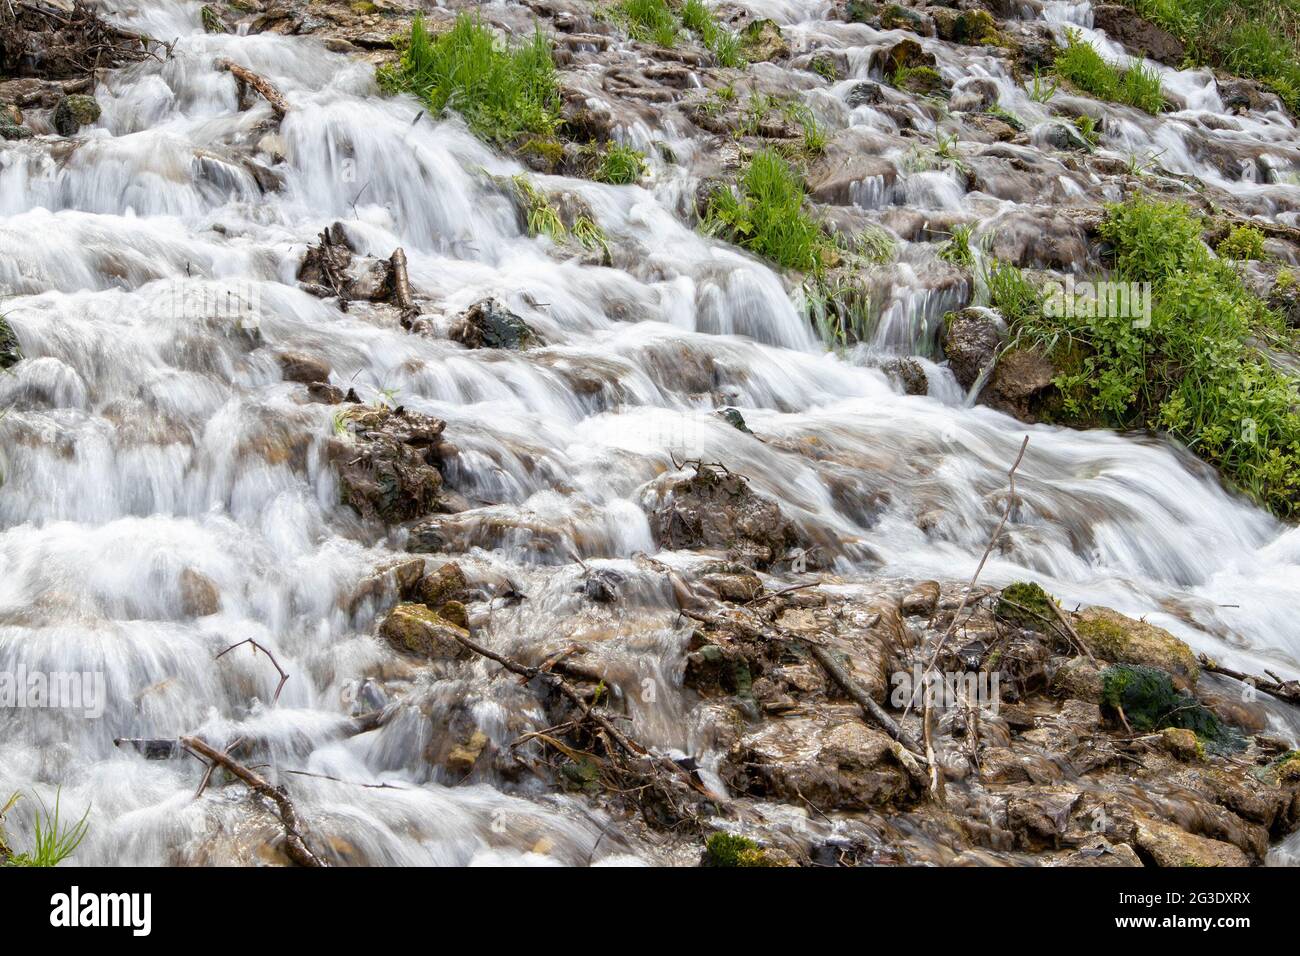 arroyo milenario de bosque frío, rápidos de río con flujo rápido, exposición larga Foto de stock